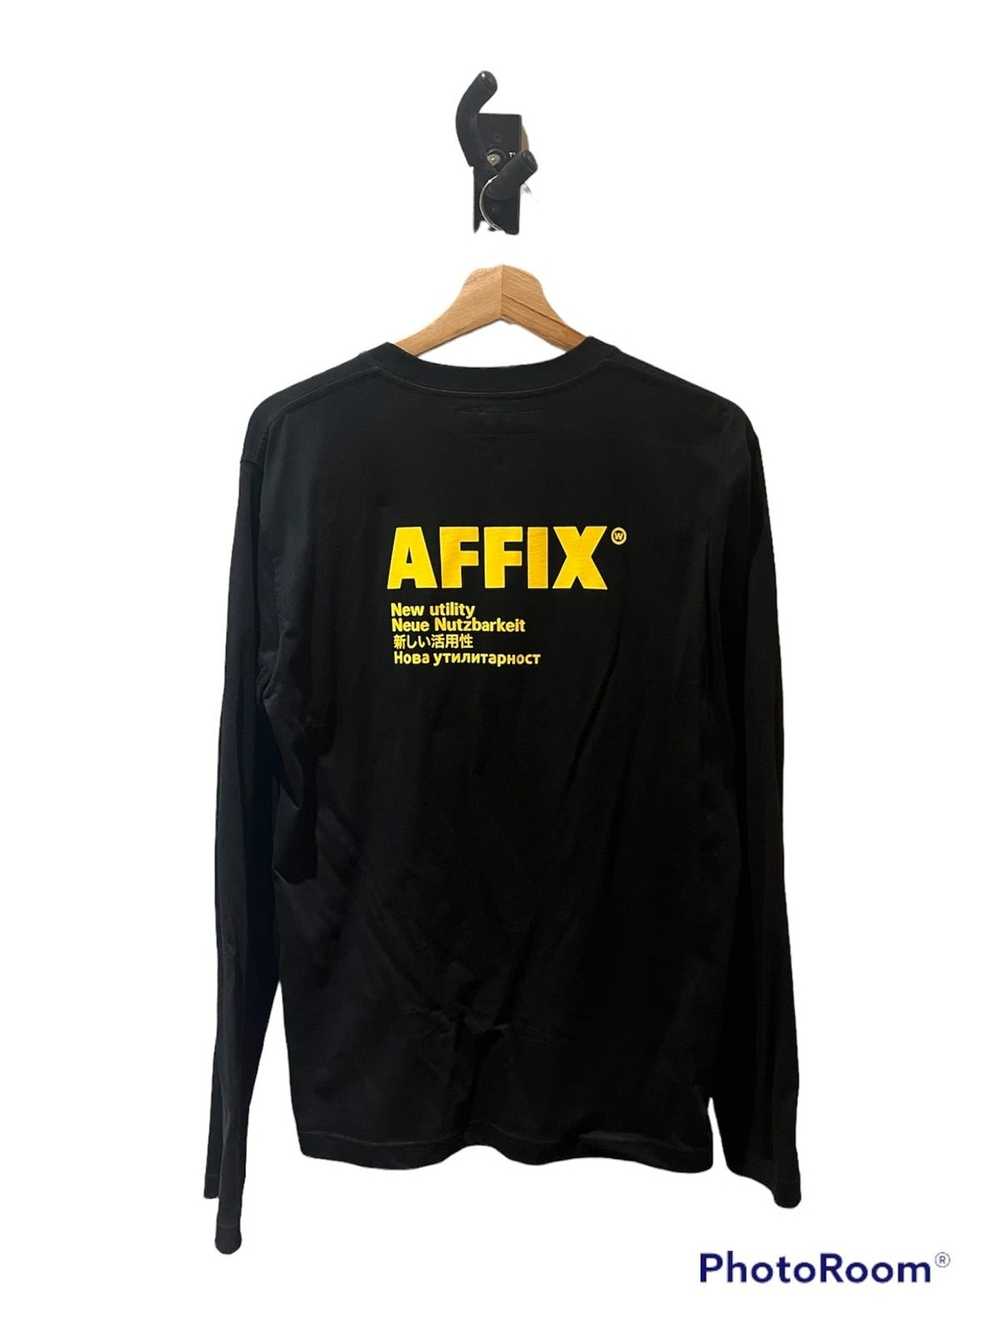 Affix Works New Utility Longsleeve - image 2